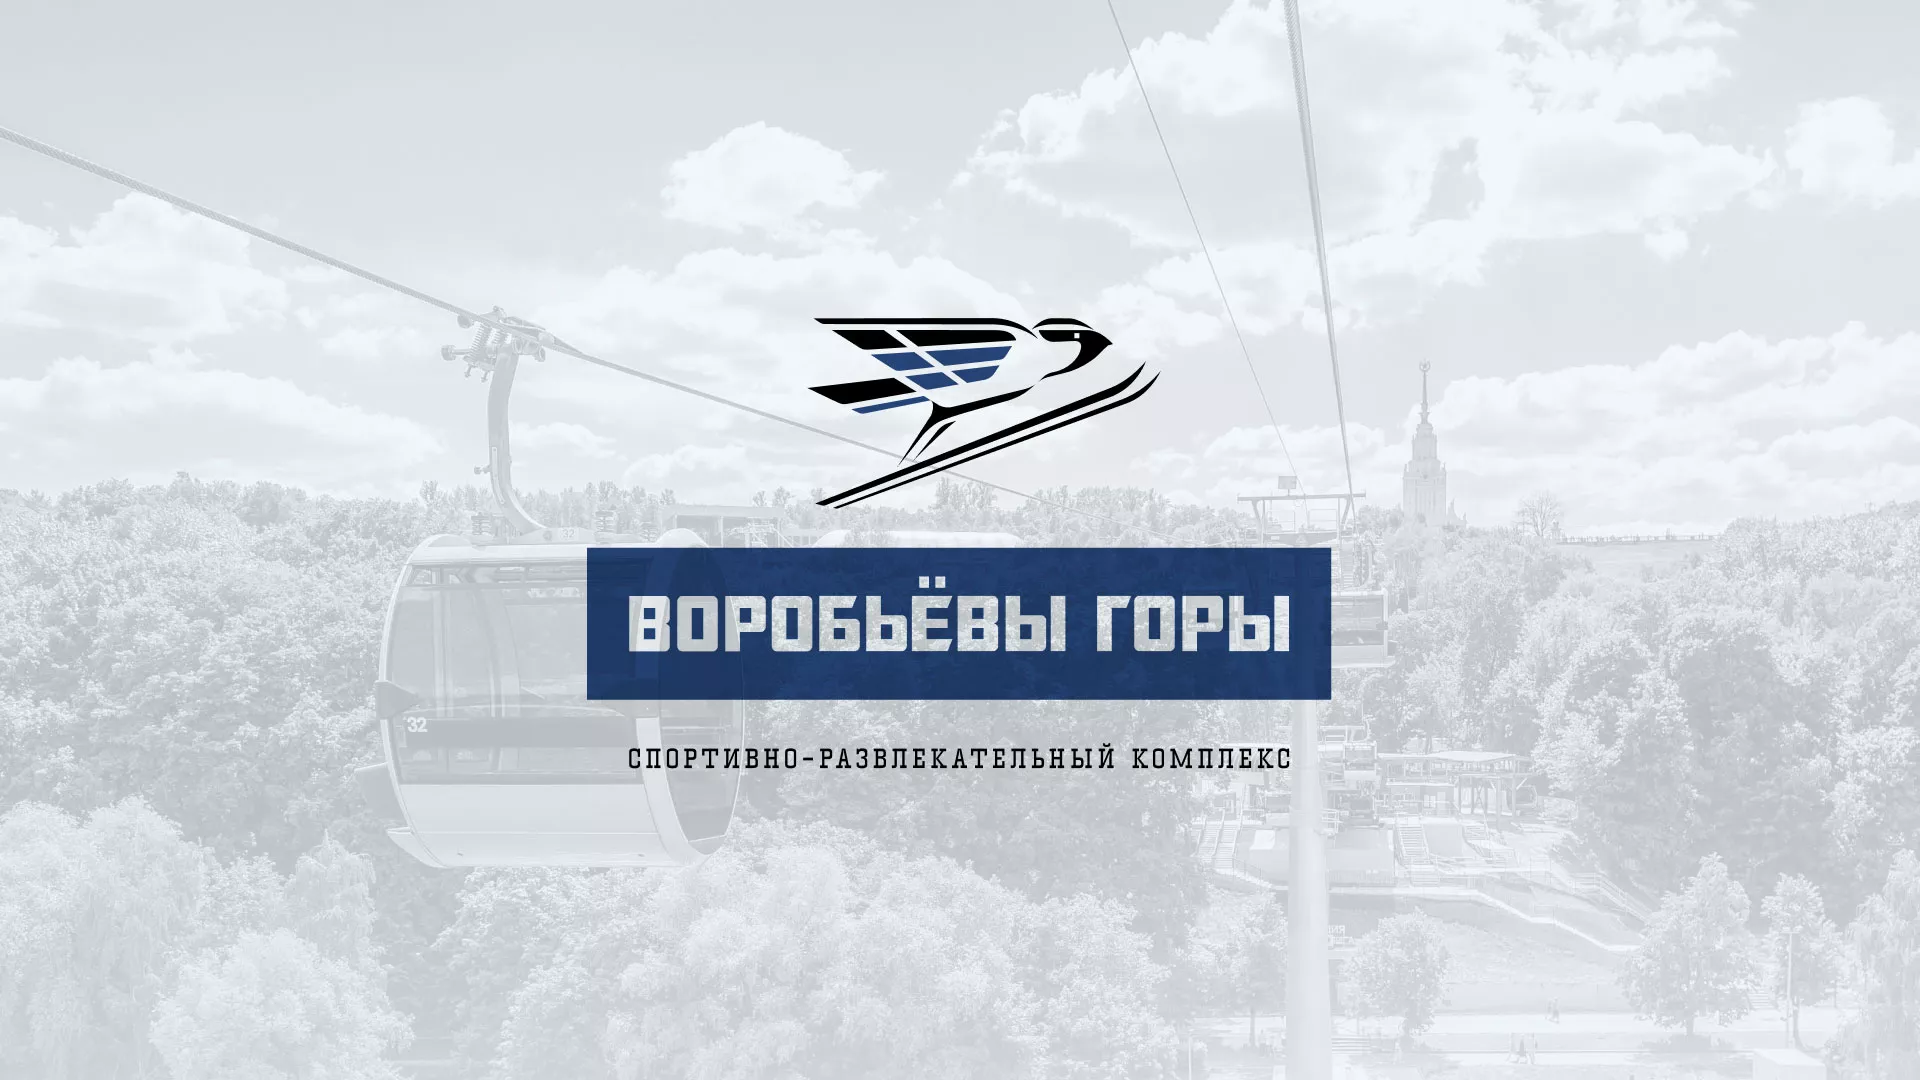 Разработка сайта в Новошахтинске для спортивно-развлекательного комплекса «Воробьёвы горы»